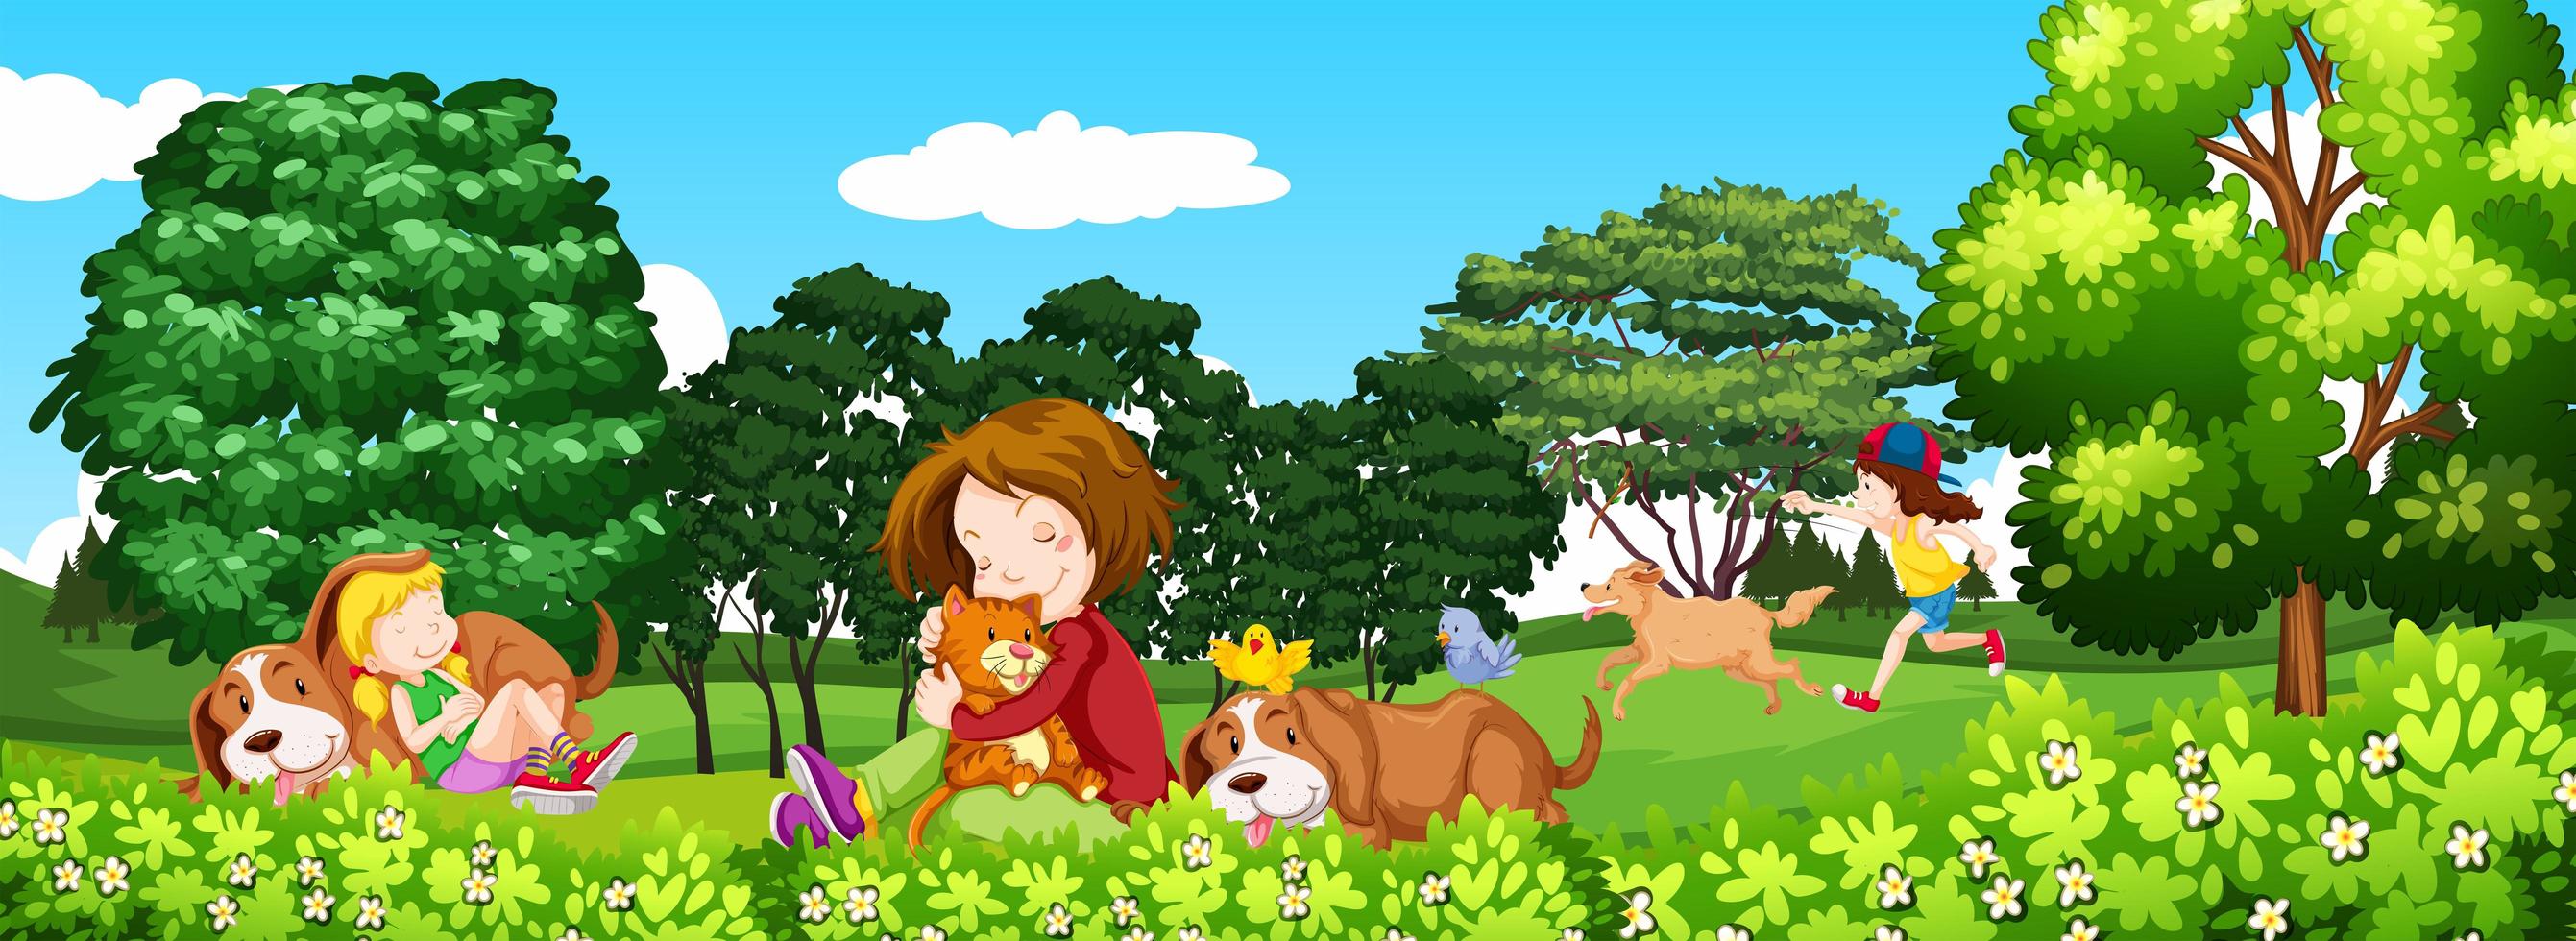 scena con bambini e animali domestici nel parco vettore